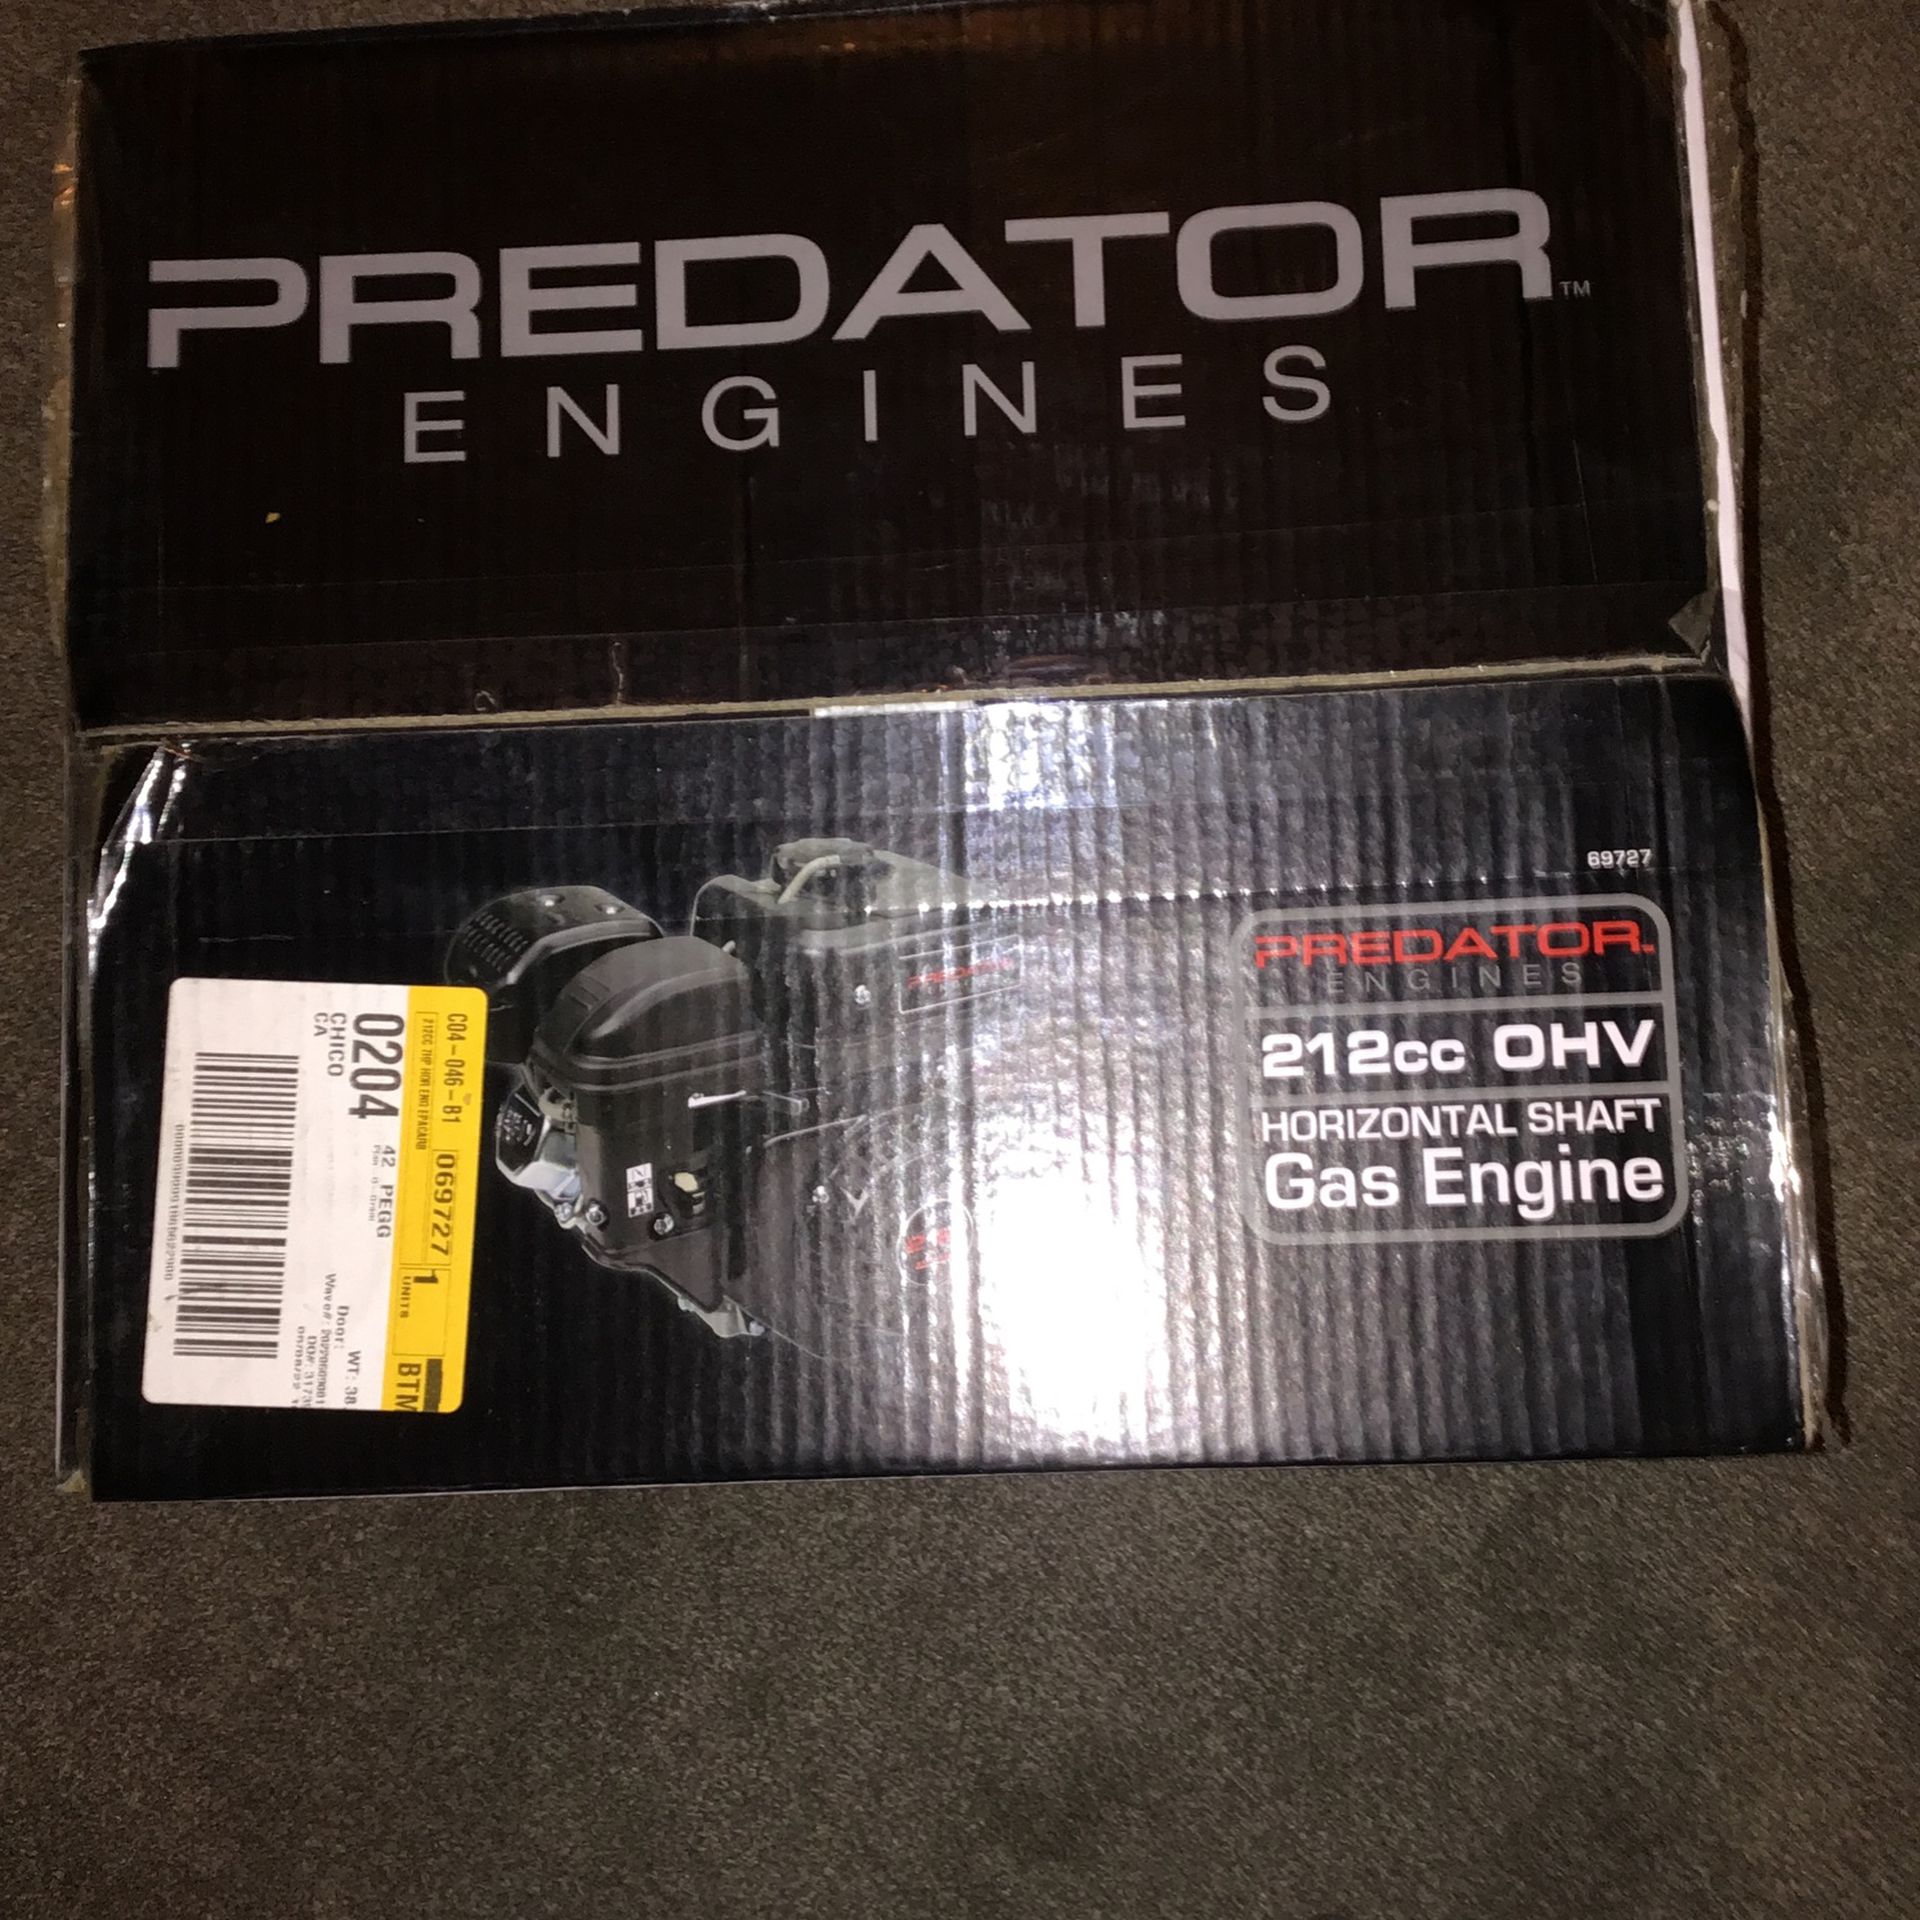 Predator Engine 212cc